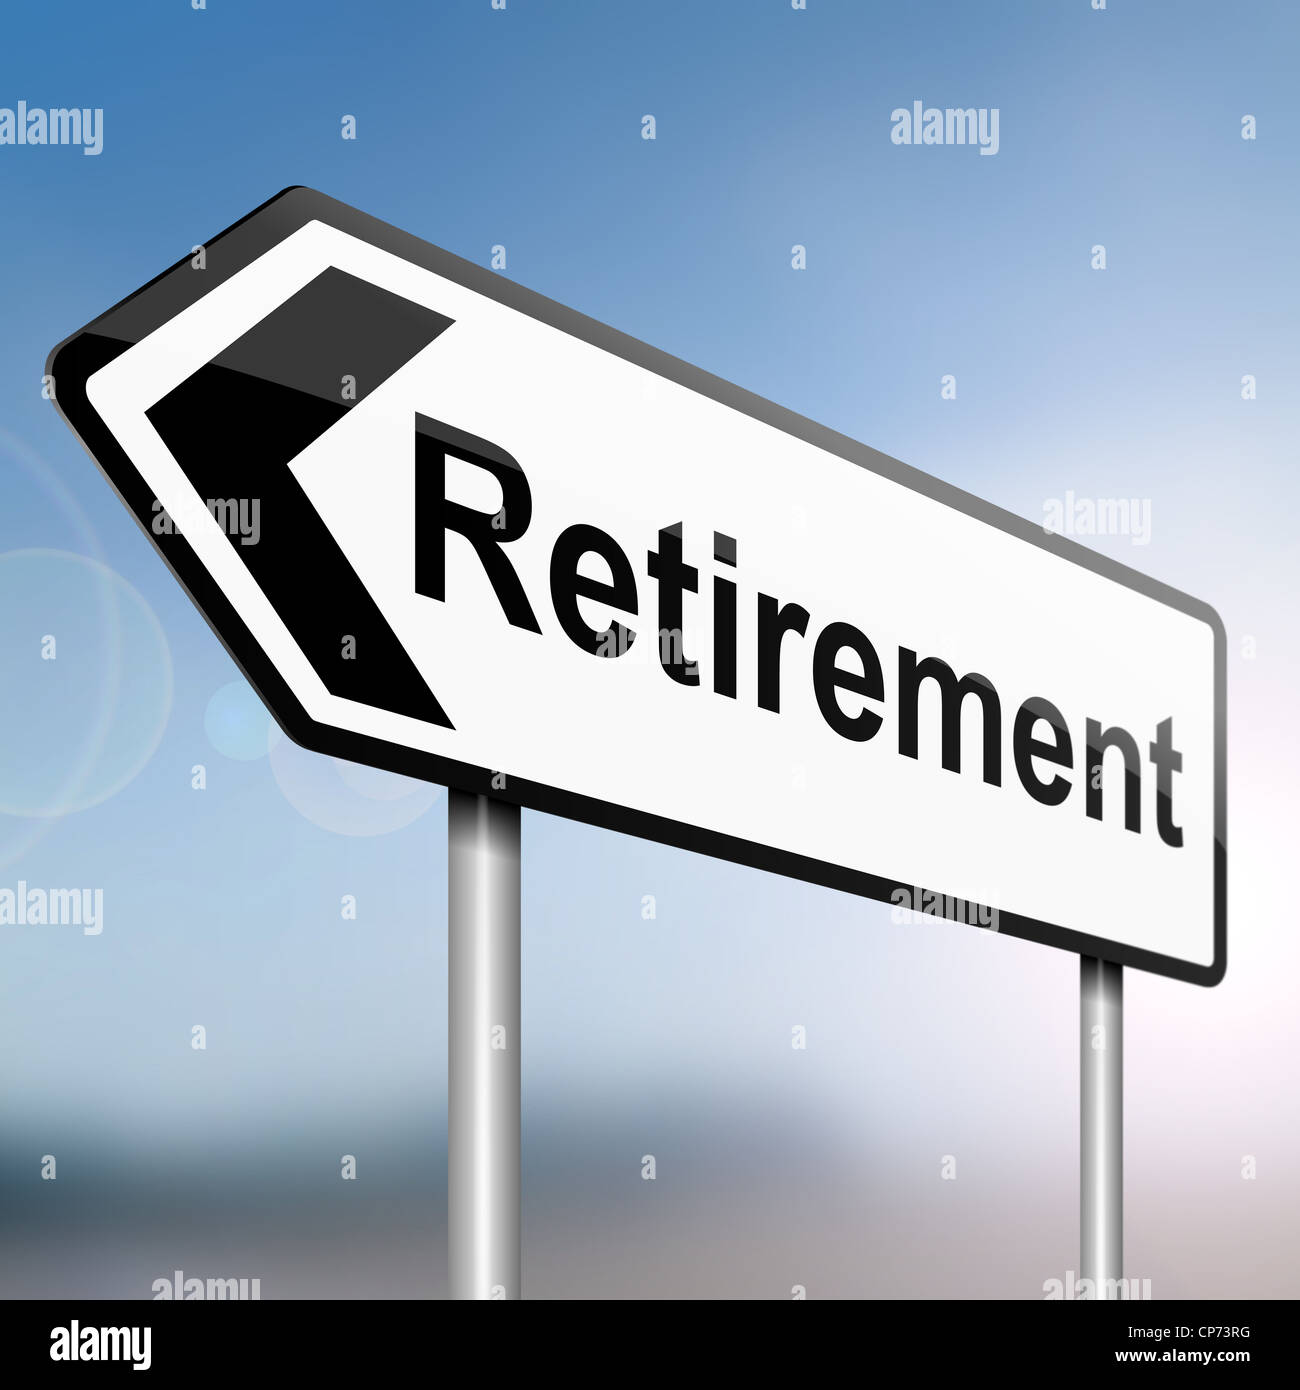 Retirement. Stock Photo